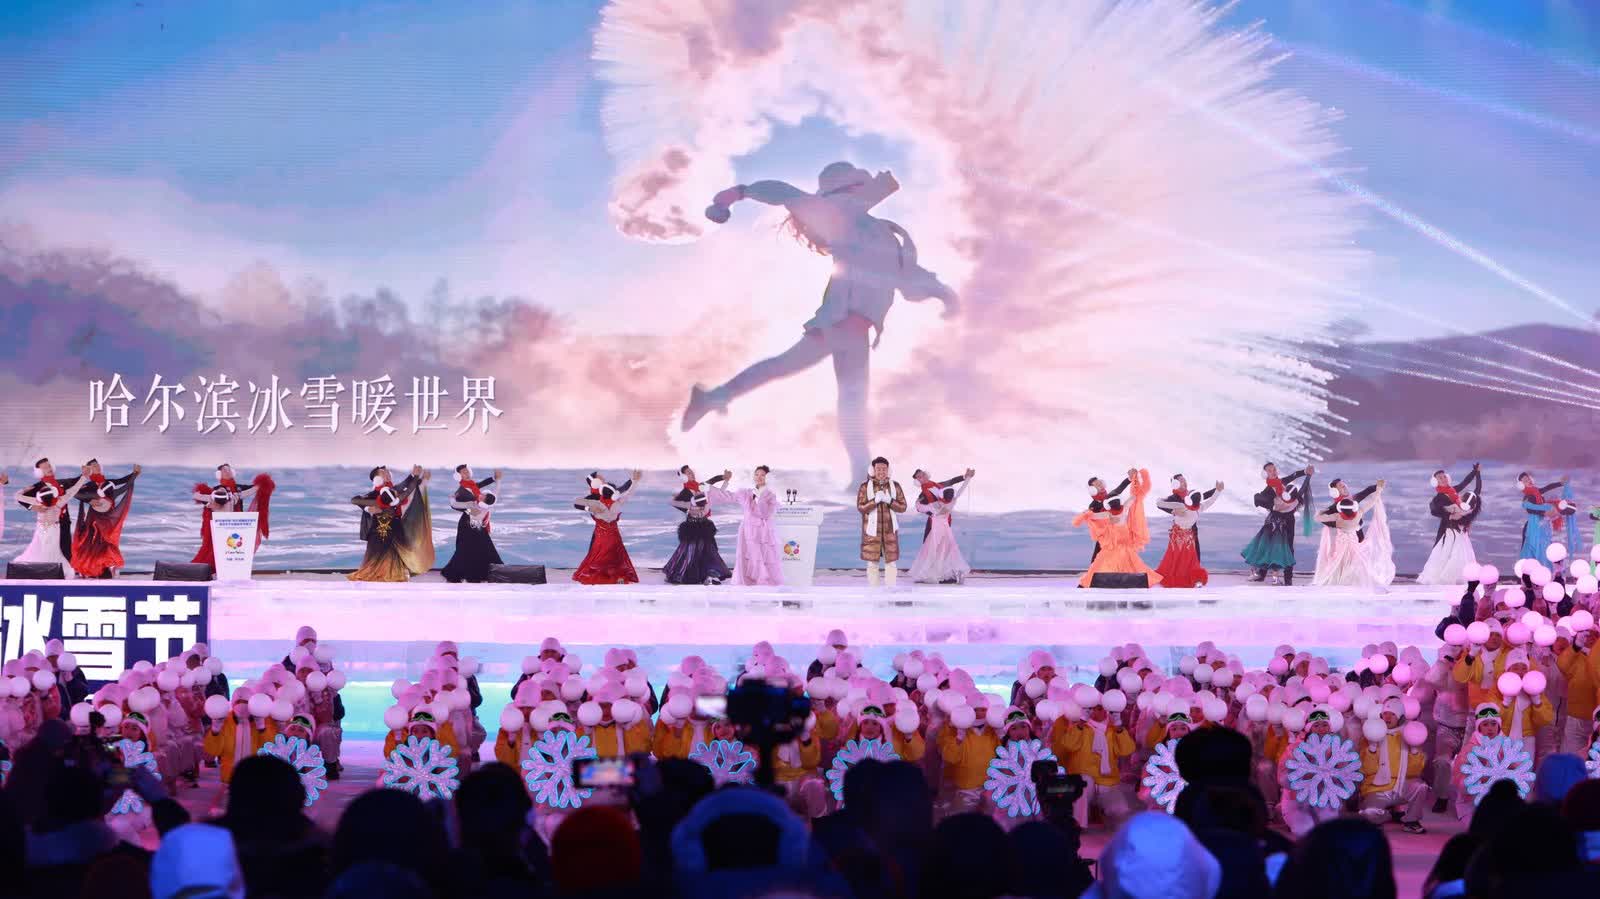 第40屆中國·哈爾濱國際冰雪節盛裝啟幕